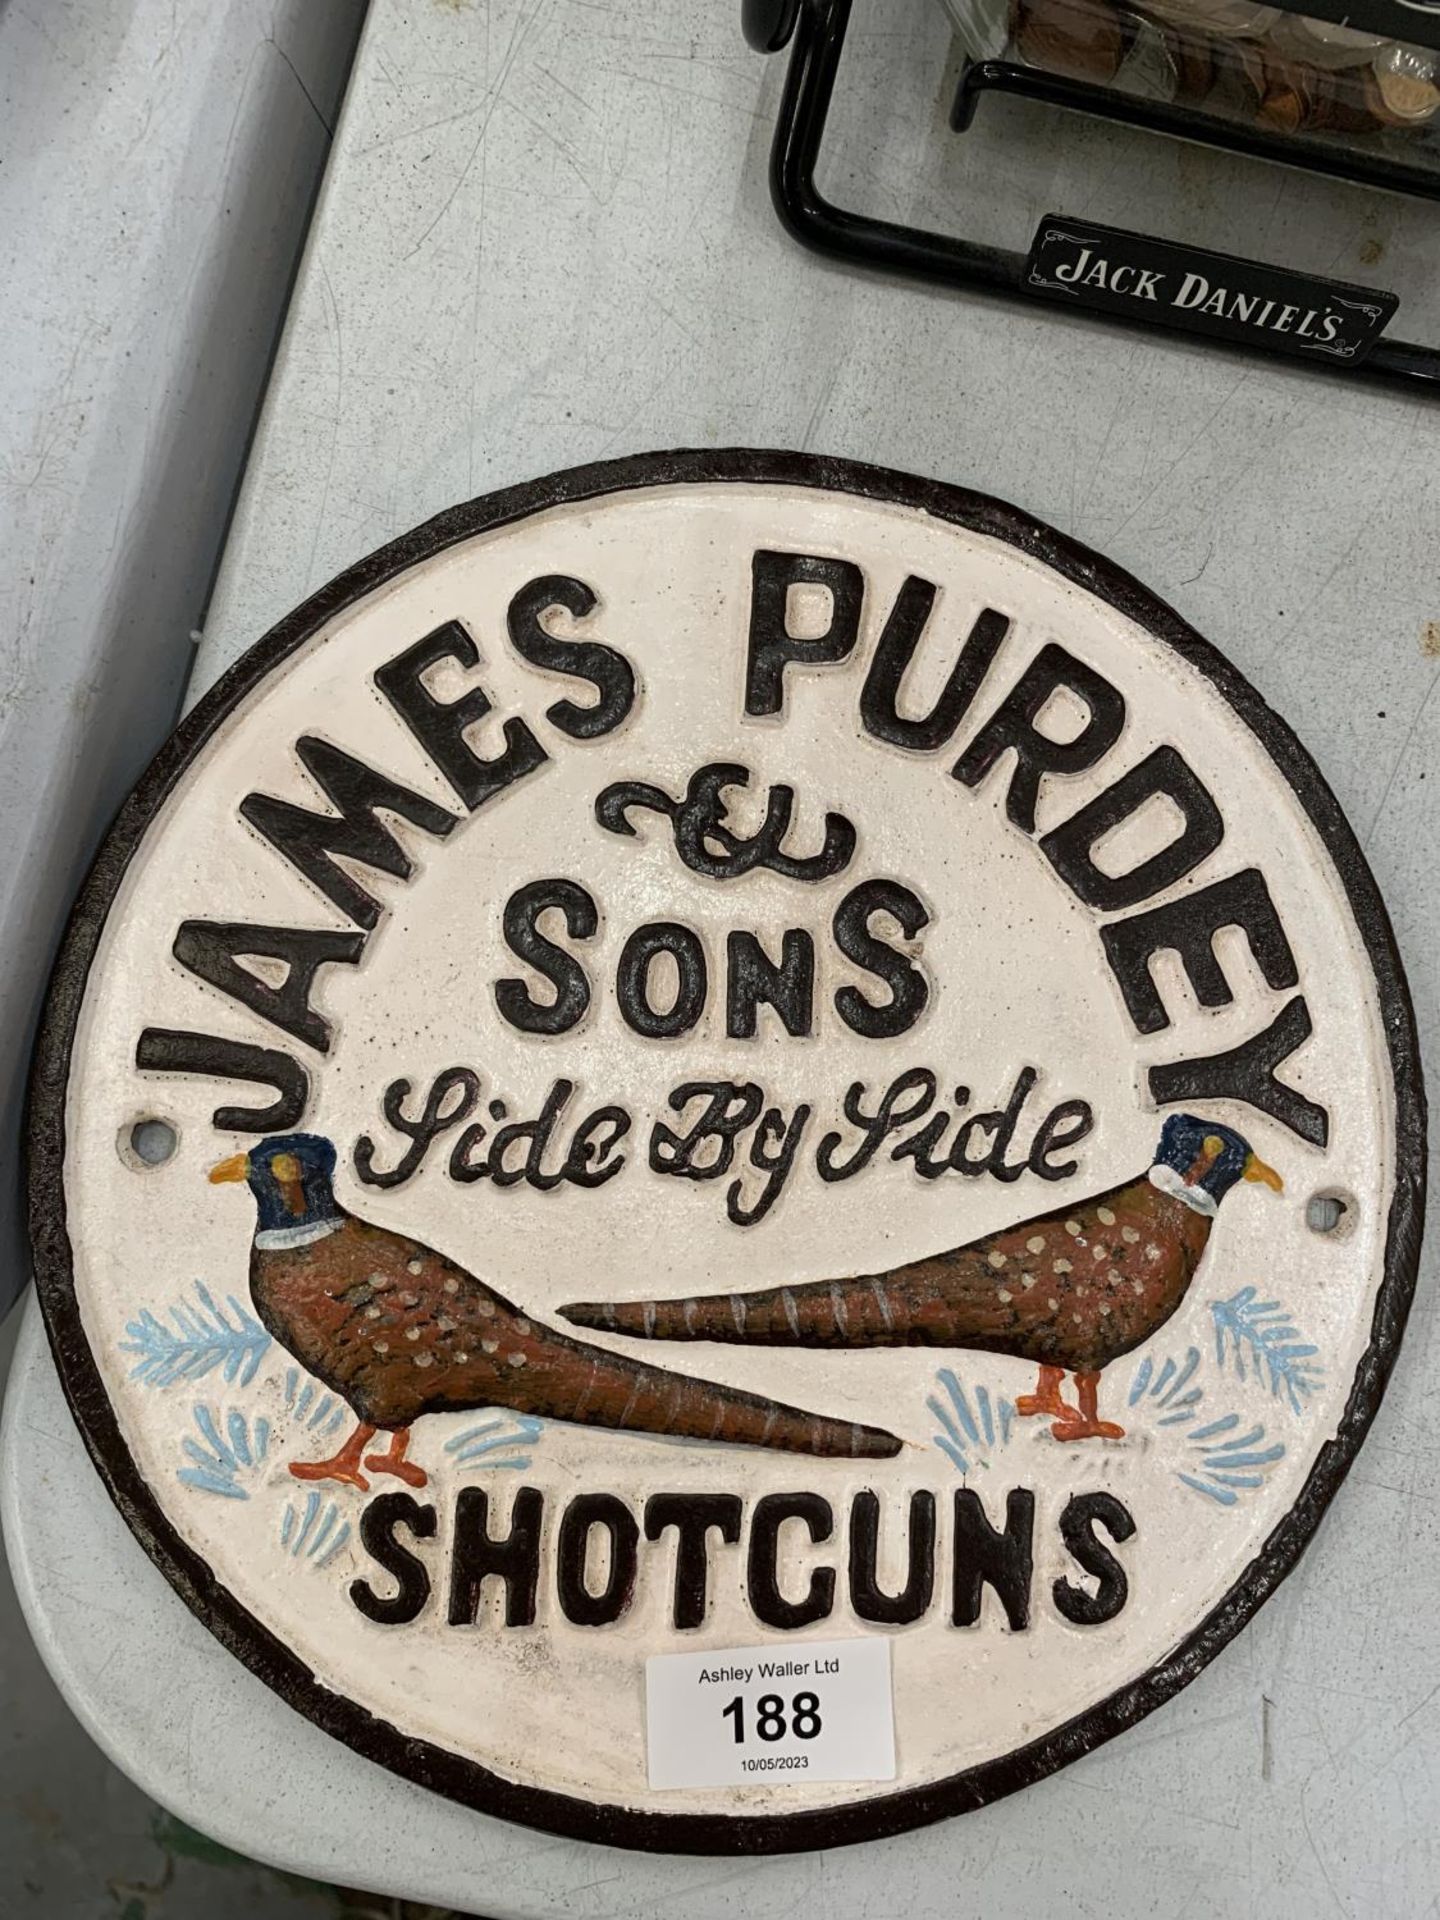 A CAST 'JAMES PURDEY & SONS SHOTGUNS' SIGN DIAMETER 23CM